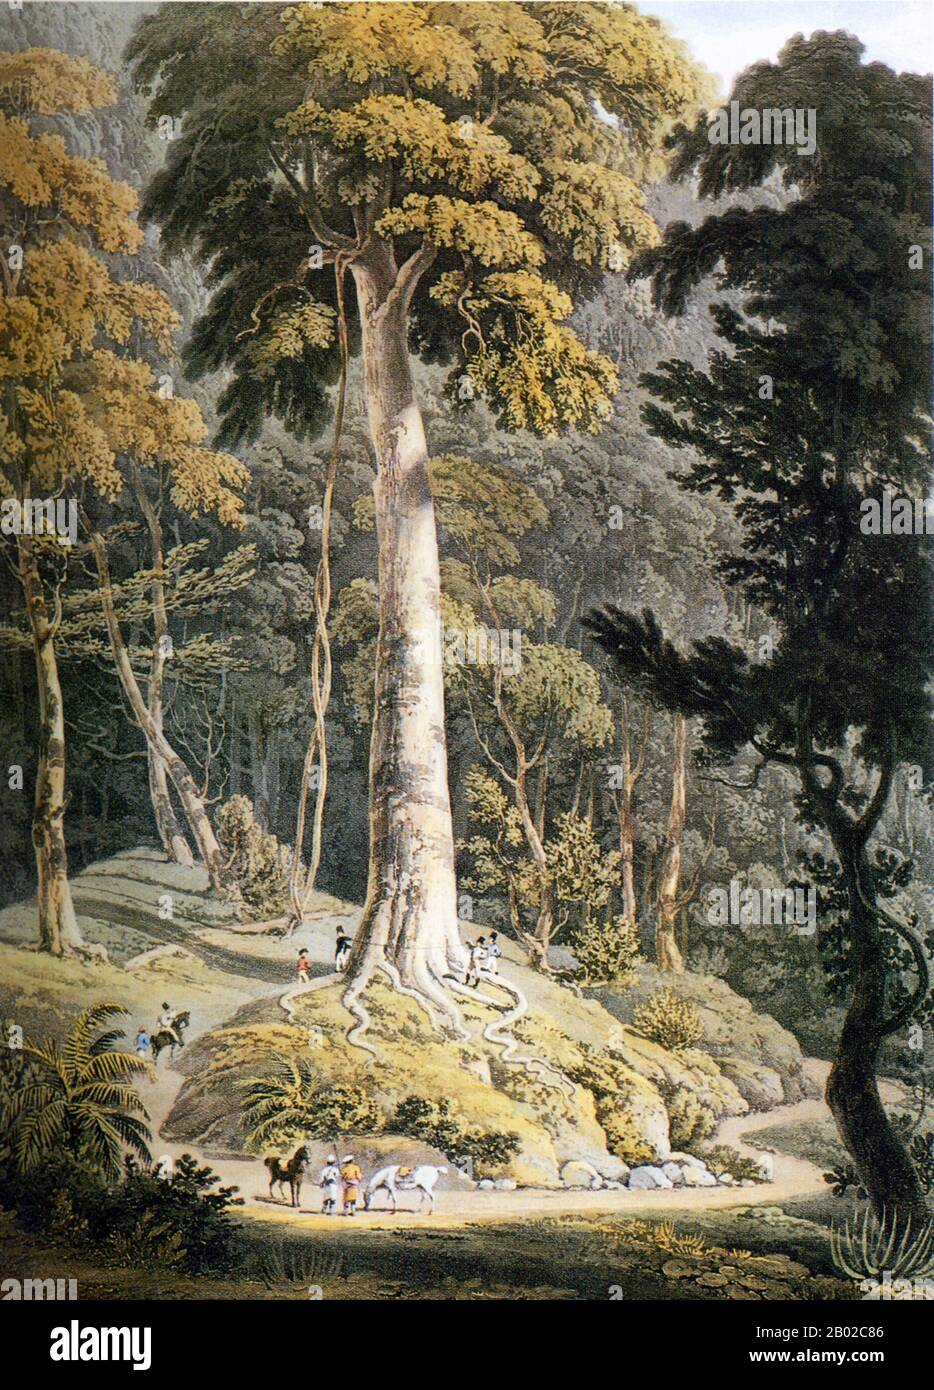 William Daniell RA (1769–1837) était un peintre et graveur de paysage et de marine anglais. Il a beaucoup voyagé en Extrême-Orient, aidant à produire l'un des plus beaux volumes illustrés de l'époque - Le Paysage oriental. William Daniell est né à Kingston-upon-Thames, dans le Surrey. L'avenir de Daniell a été radicalement modifié lorsqu'il a été envoyé vivre avec son oncle, l'artiste du paysage Thomas Daniell (1749-1840), après la mort prématurée de son père en 1779. En 1784, William accompagne son oncle en Inde, qui y travaille comme graveur, agissant comme son assistant dans la préparation de dessins et d'ébauches. Banque D'Images